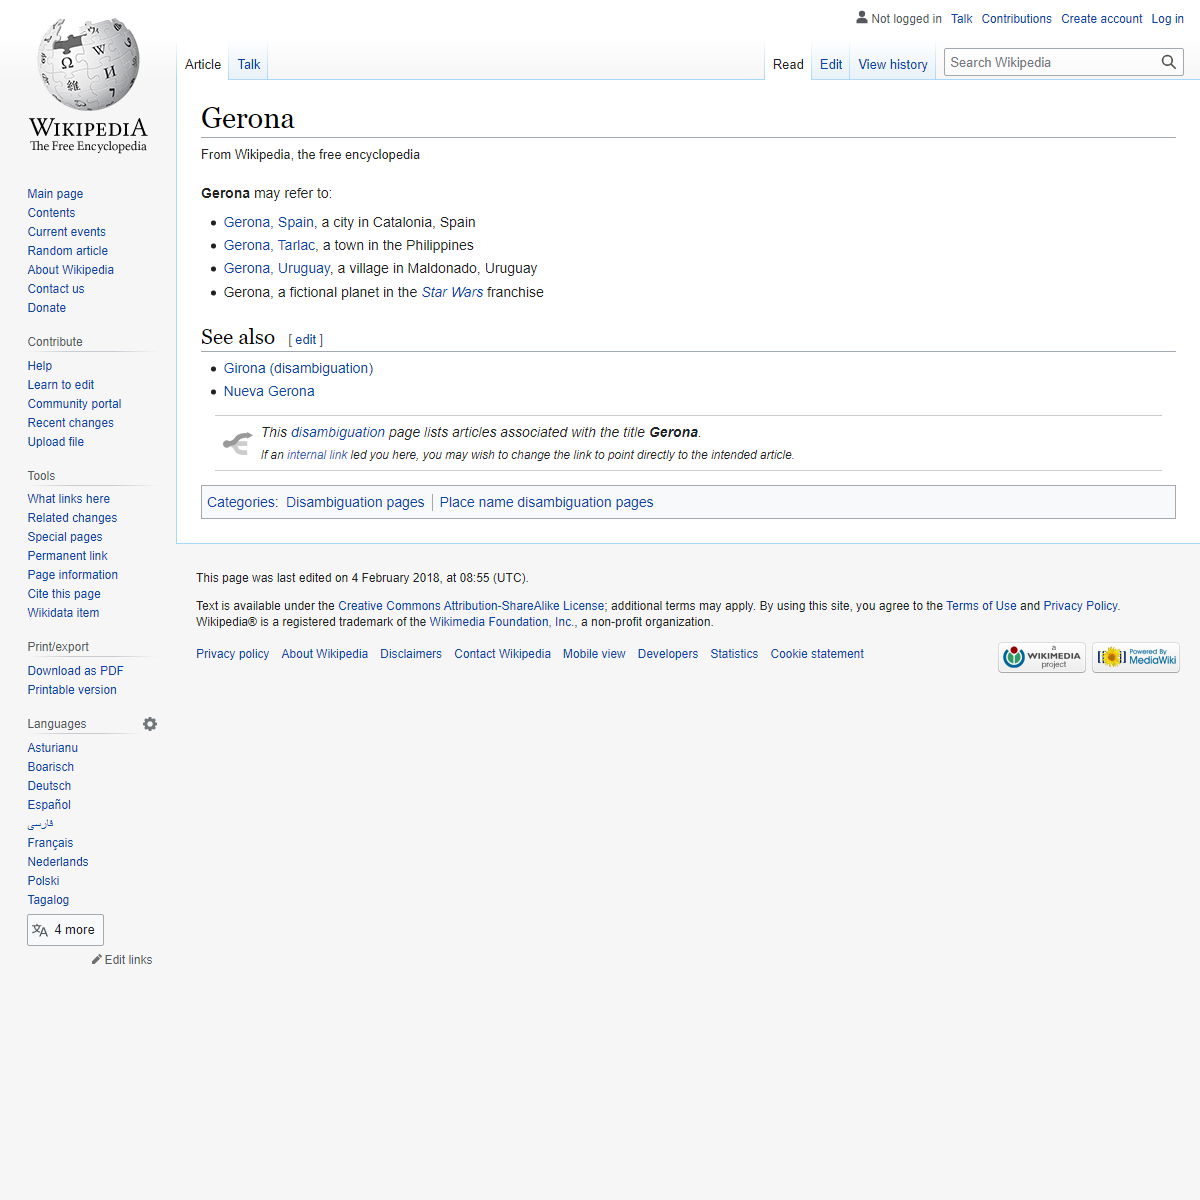 A complete backup of https://en.wikipedia.org/wiki/Gerona